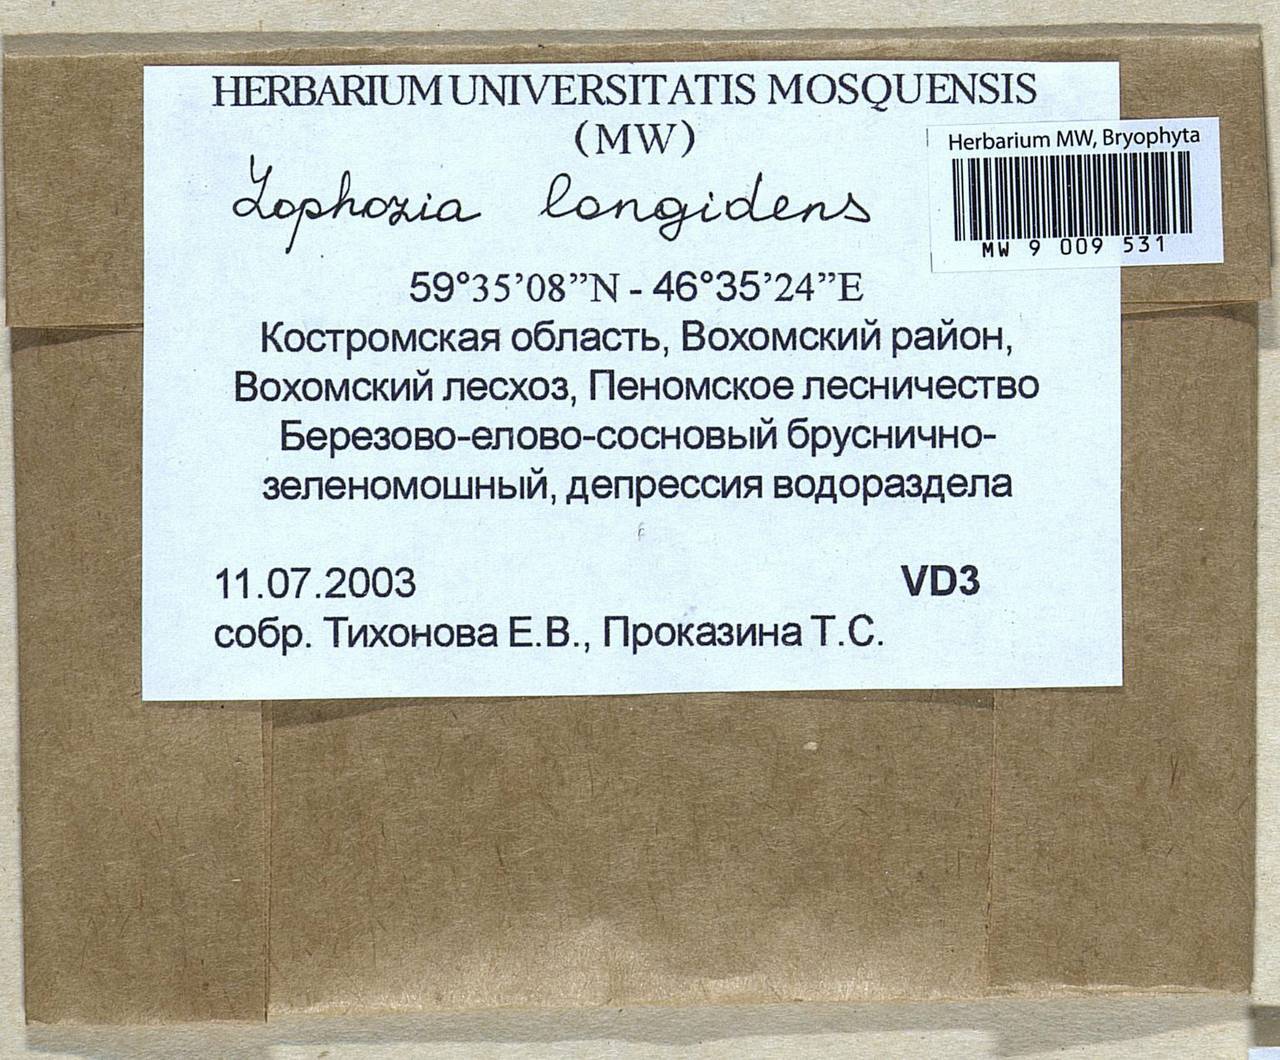 Lophoziopsis longidens (Lindb.) Konstant. & Vilnet, Гербарий мохообразных, Мхи - Центральное Нечерноземье (B6) (Россия)